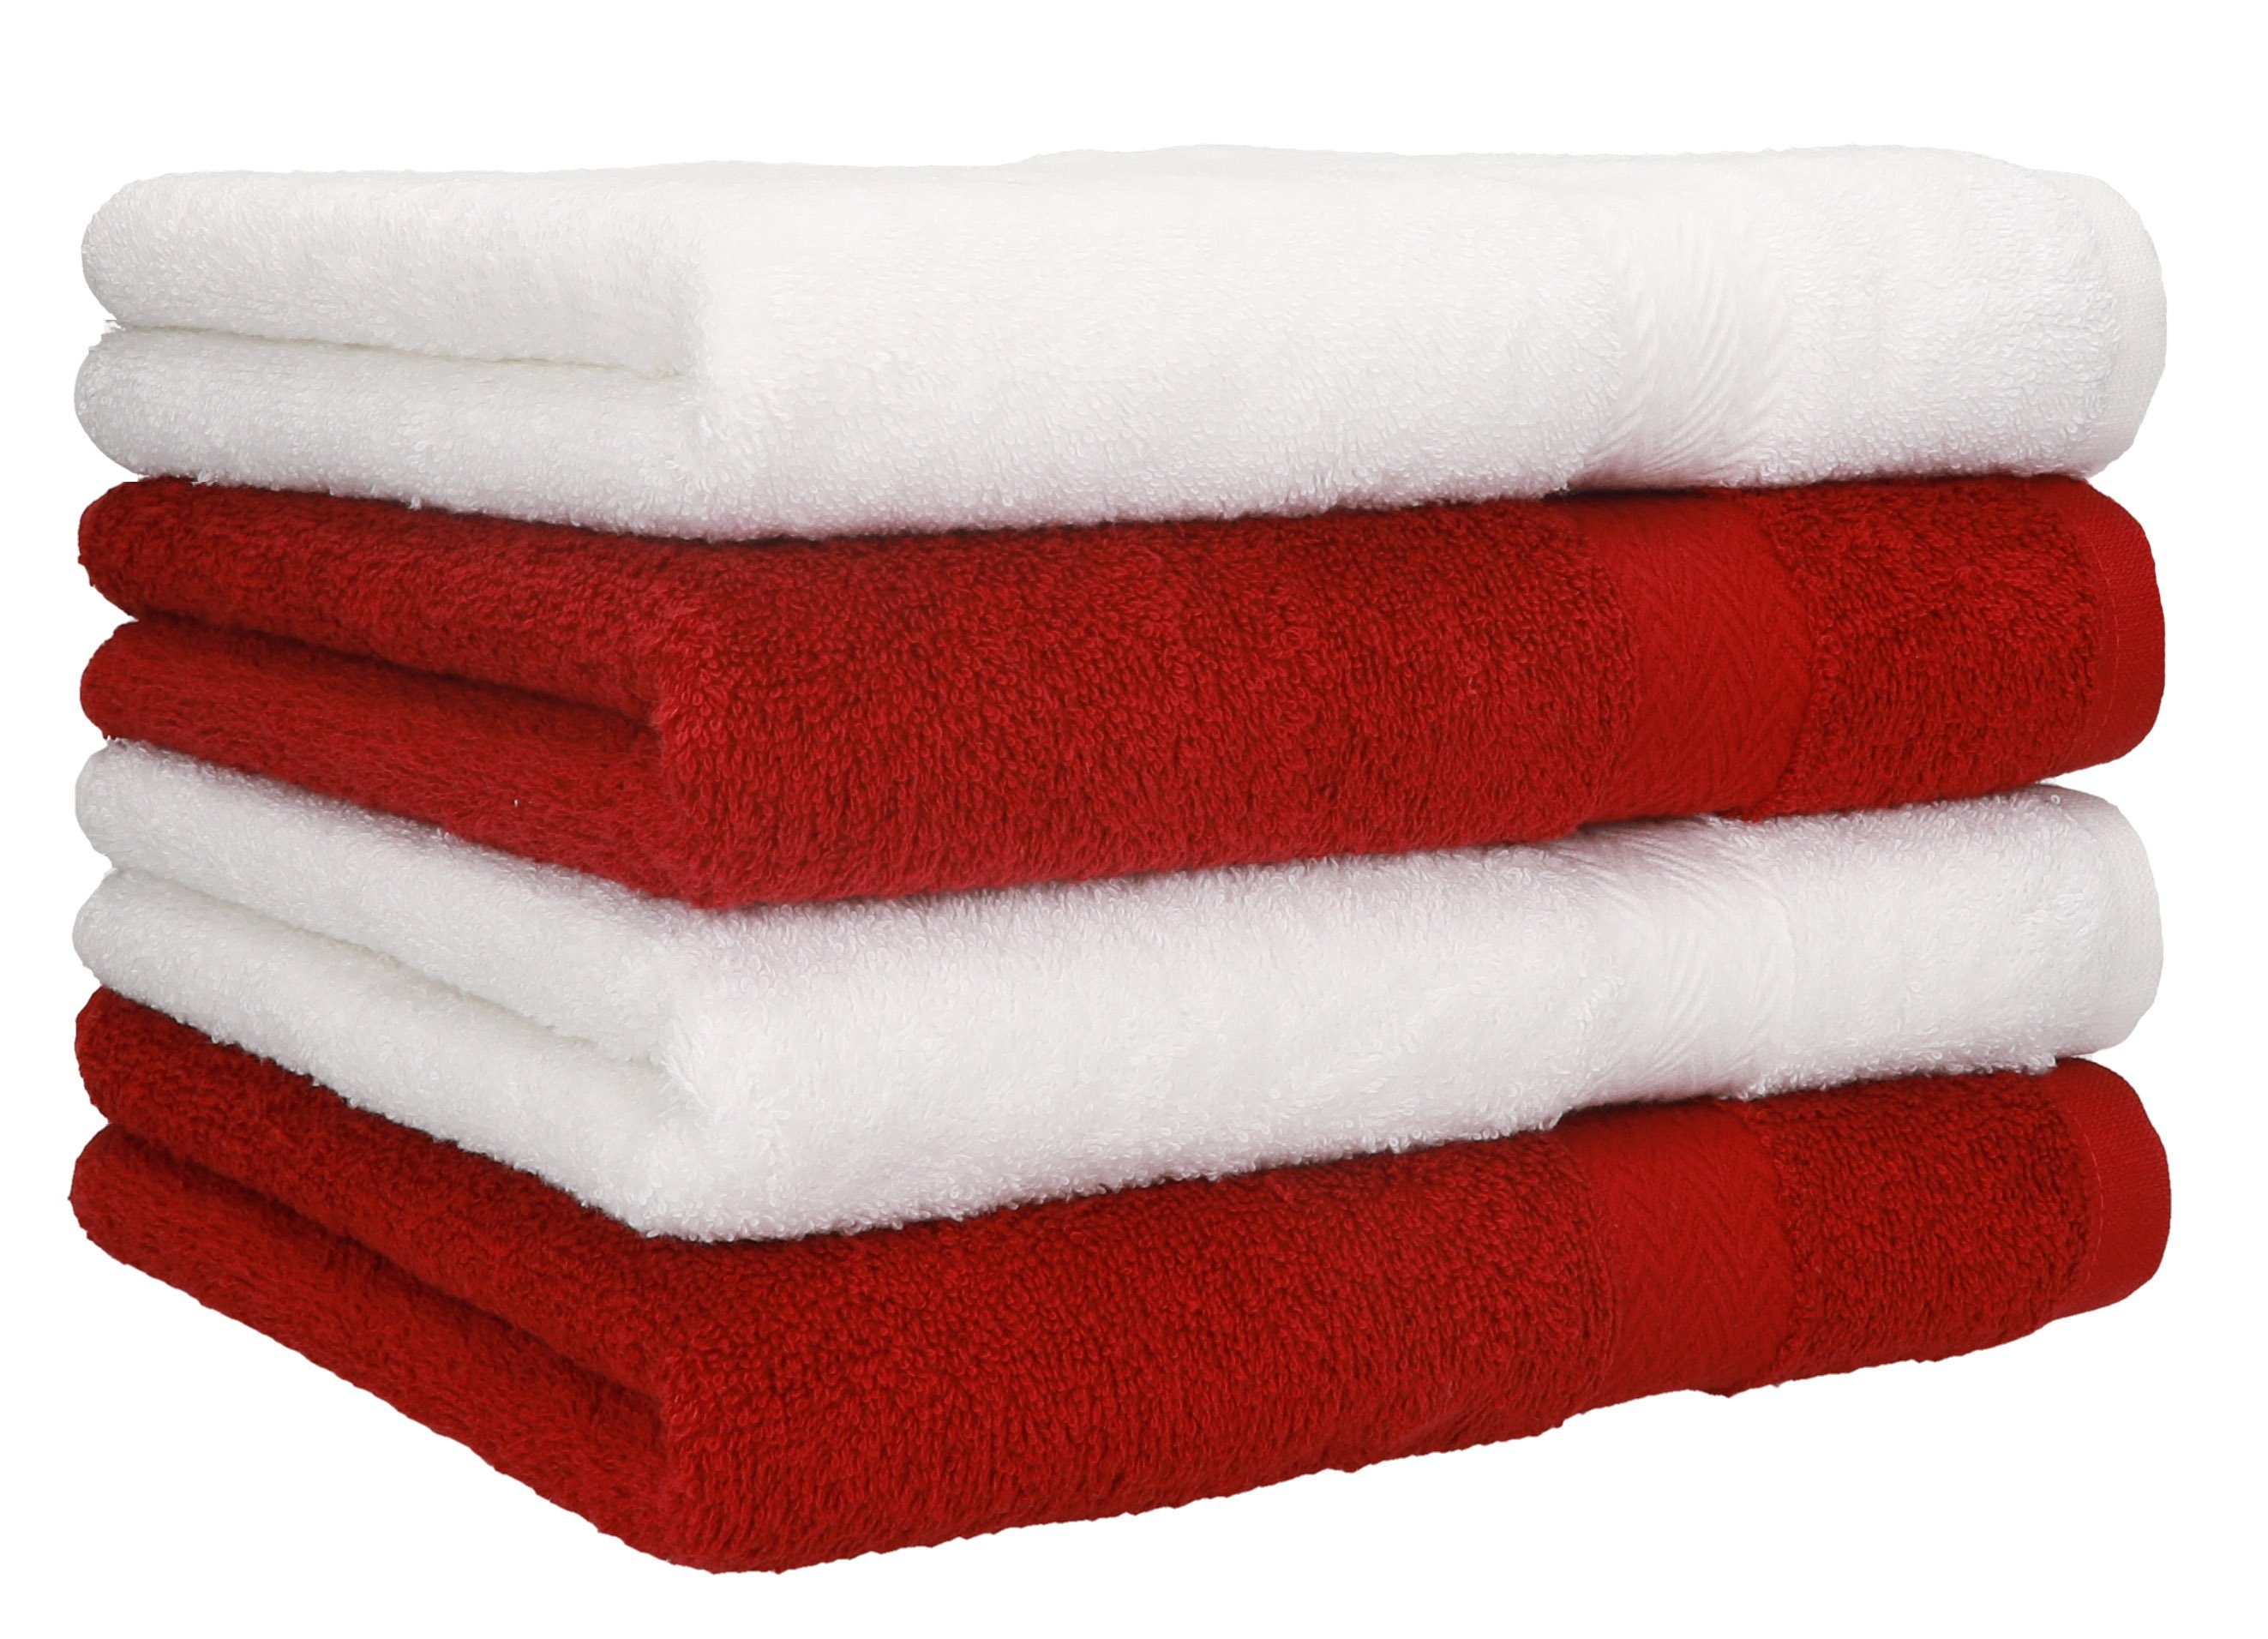 Betz Handtücher 4 Stück Handtücher Premium 4 Handtücher Farbe weiß und dunkelrot, 100% Baumwolle